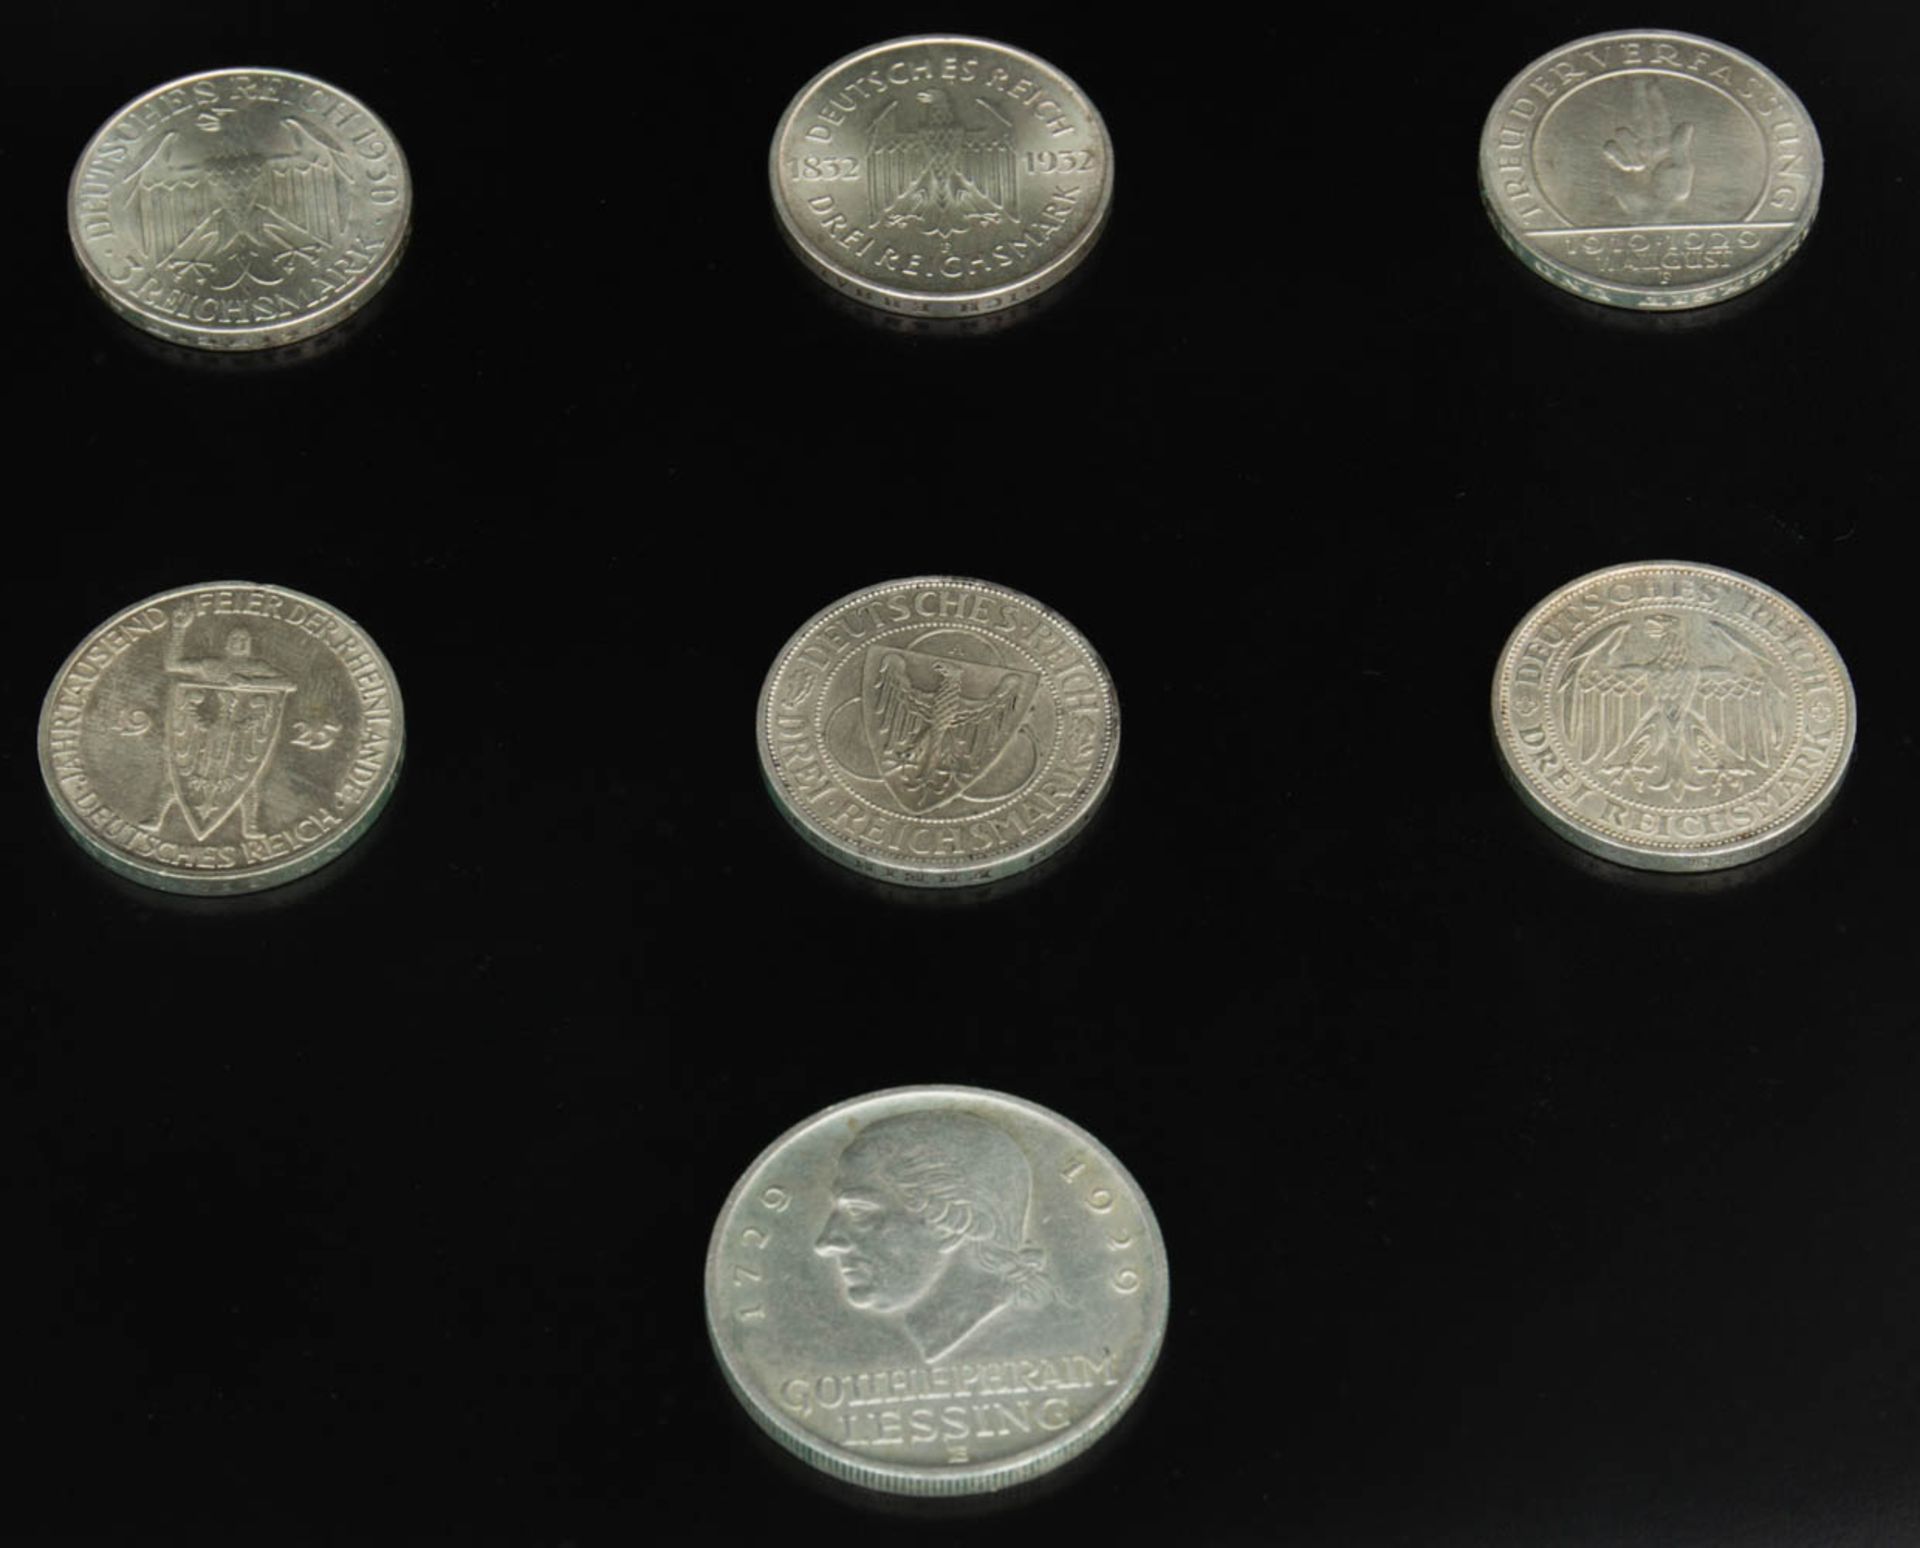 Konvolut 7 Silbermünzen, Weimarer Republik.